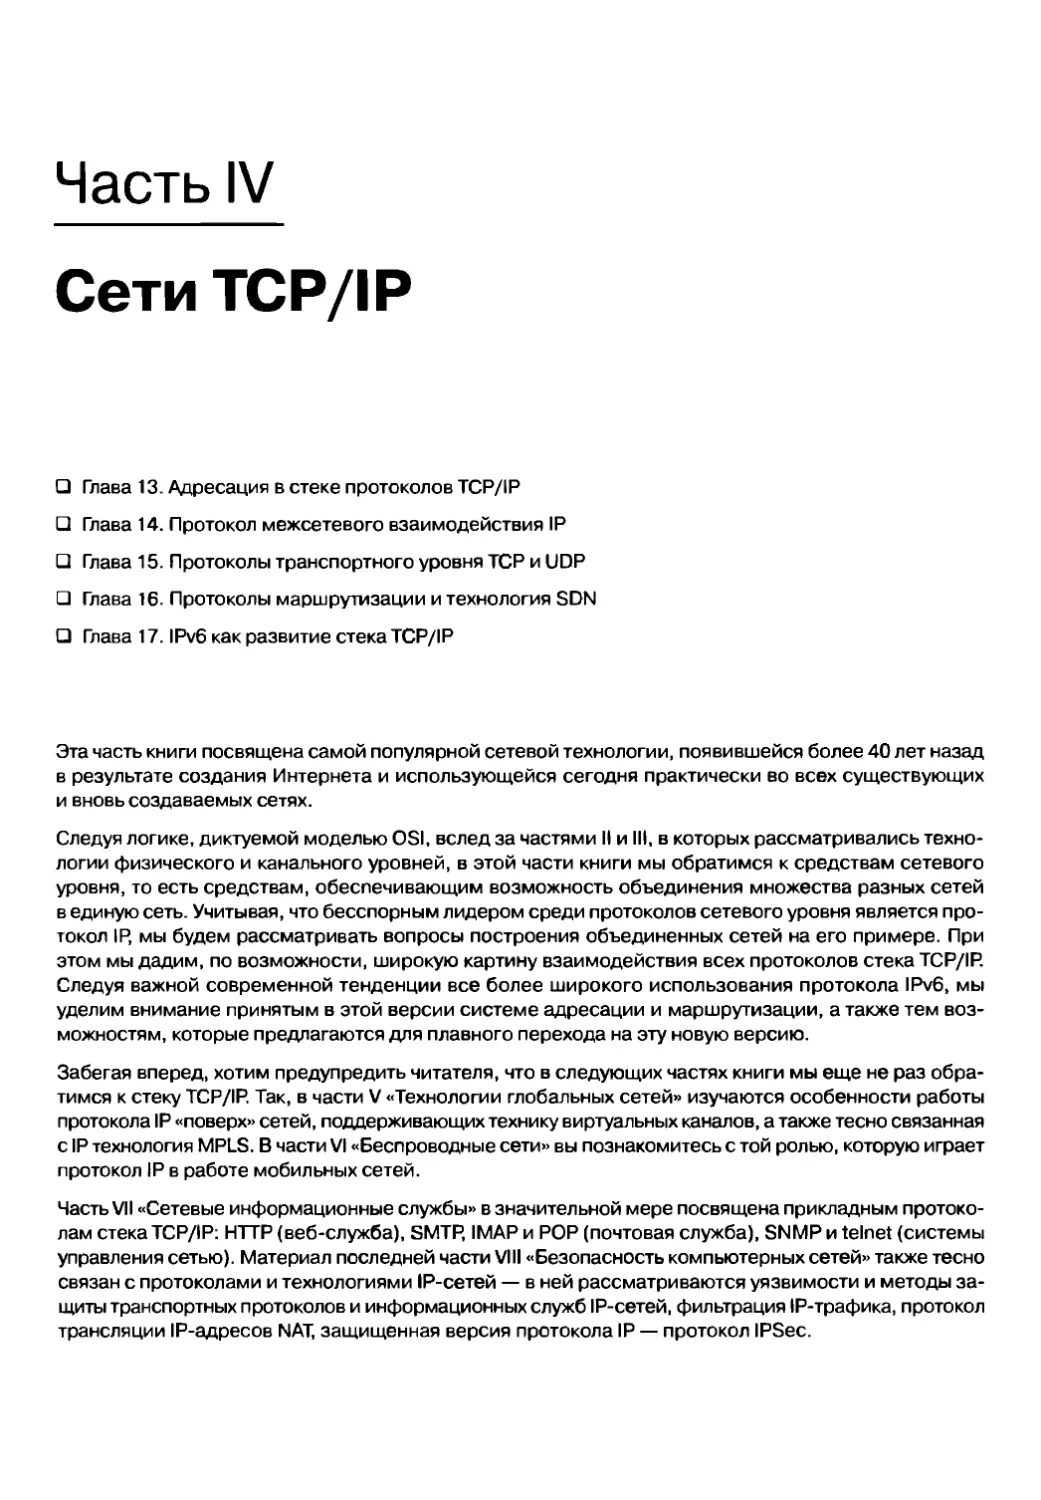 IV. Сети TCP/IP